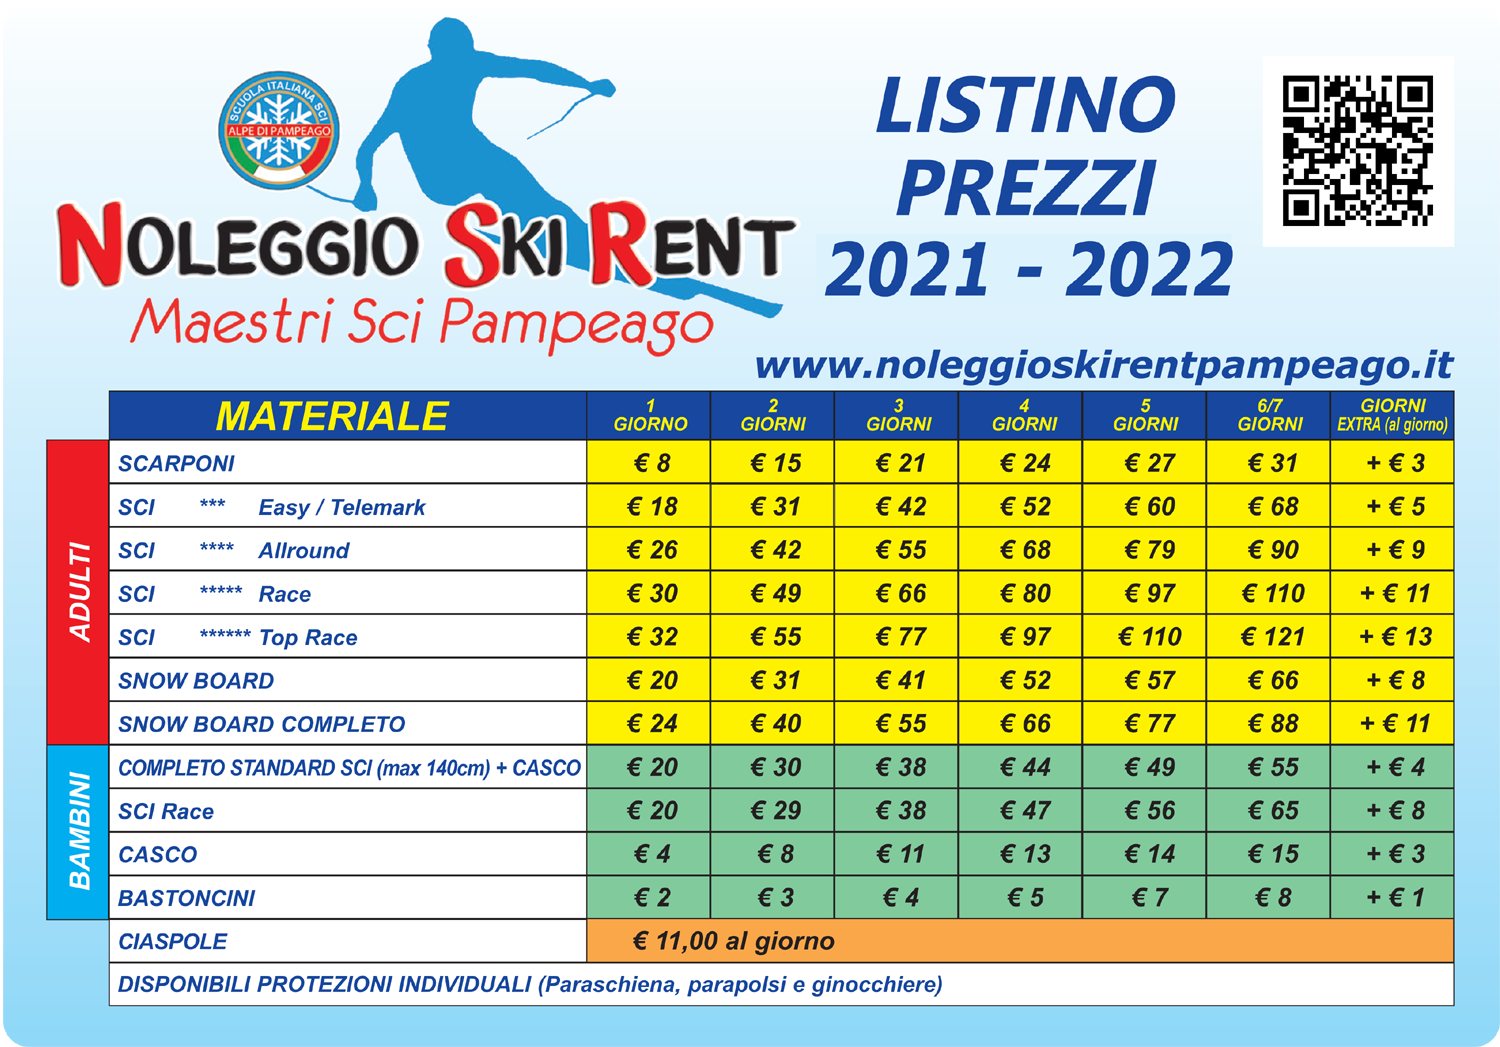 Prezzi Noleggio sci Skirent Maestri di sci Pampeago - stagione 2021/2022